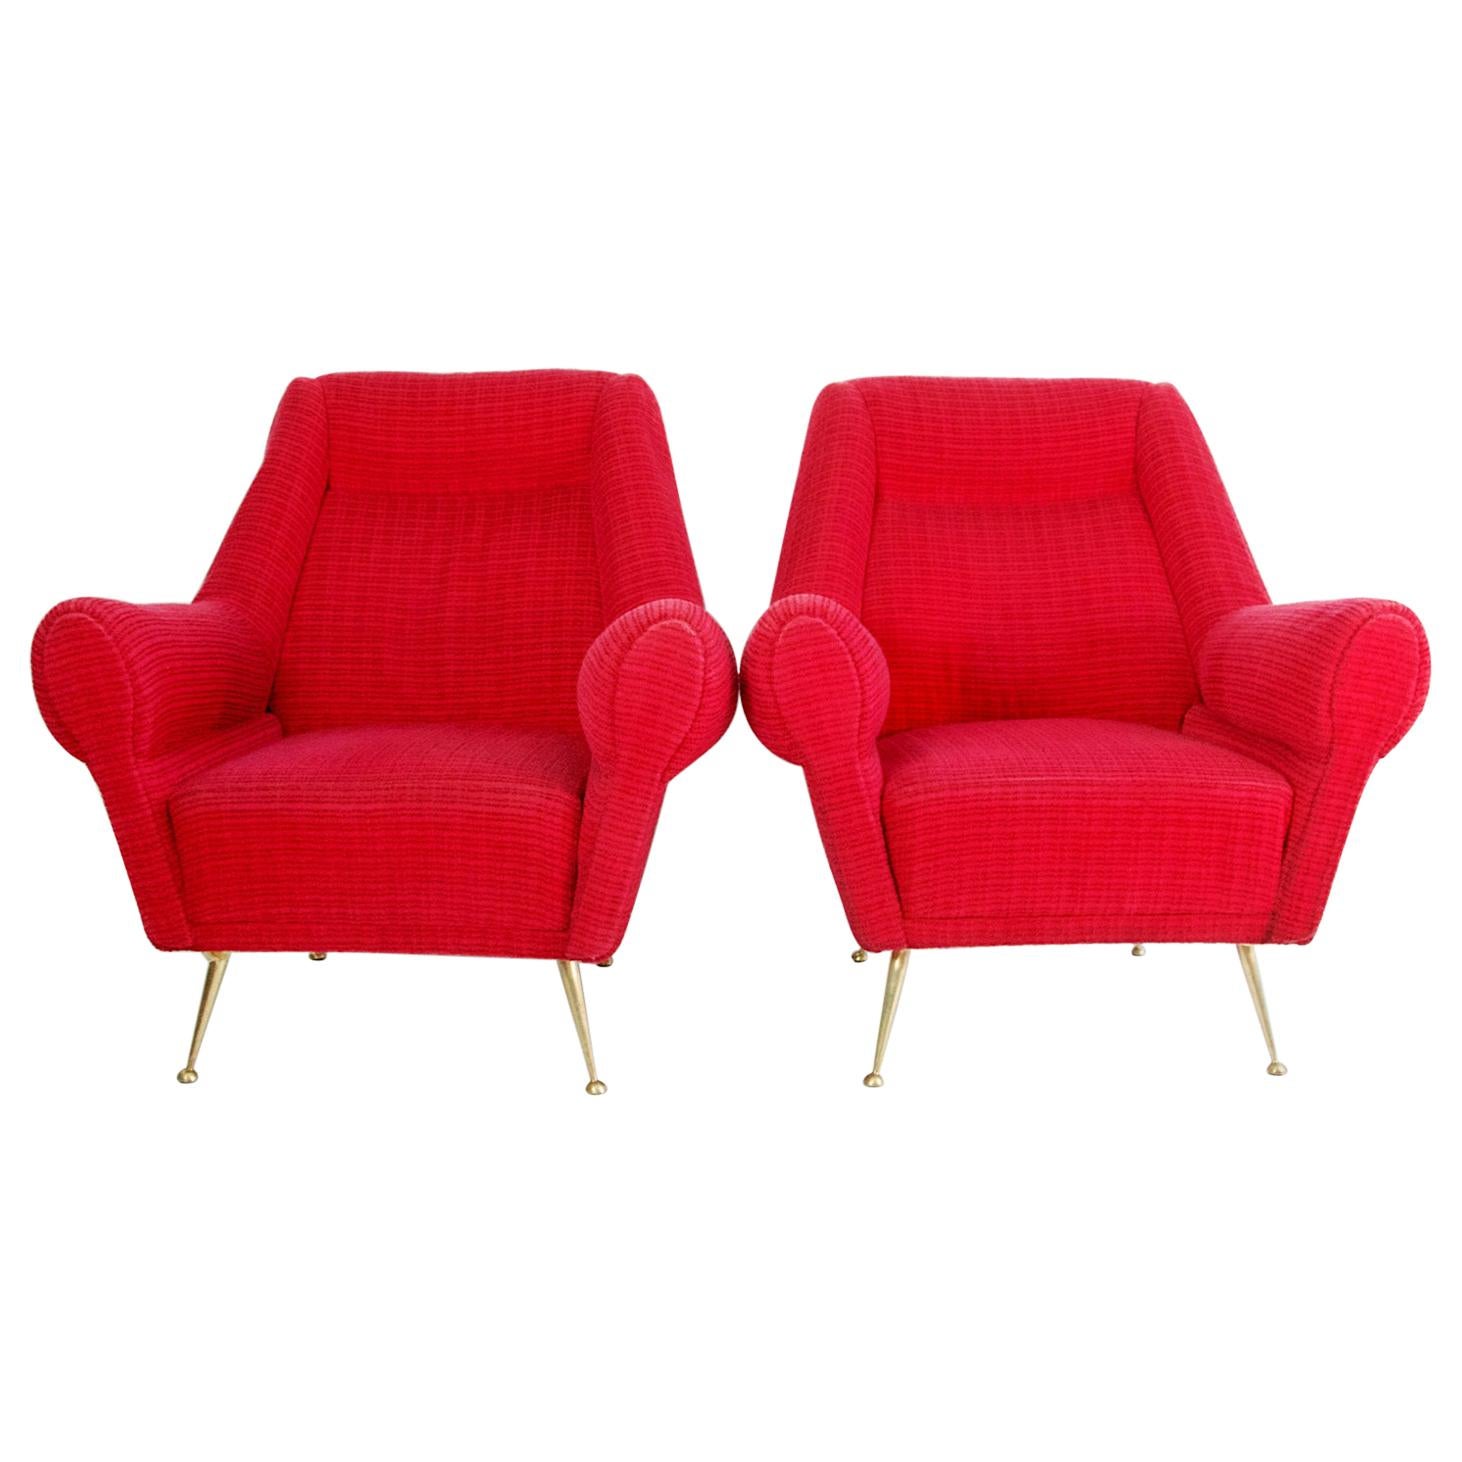 Une paire de fauteuils italiens conçus par Gigi Radice pour Minotti produit, circa 1950 avec le tissu original. Les pieds sont en laiton massif.